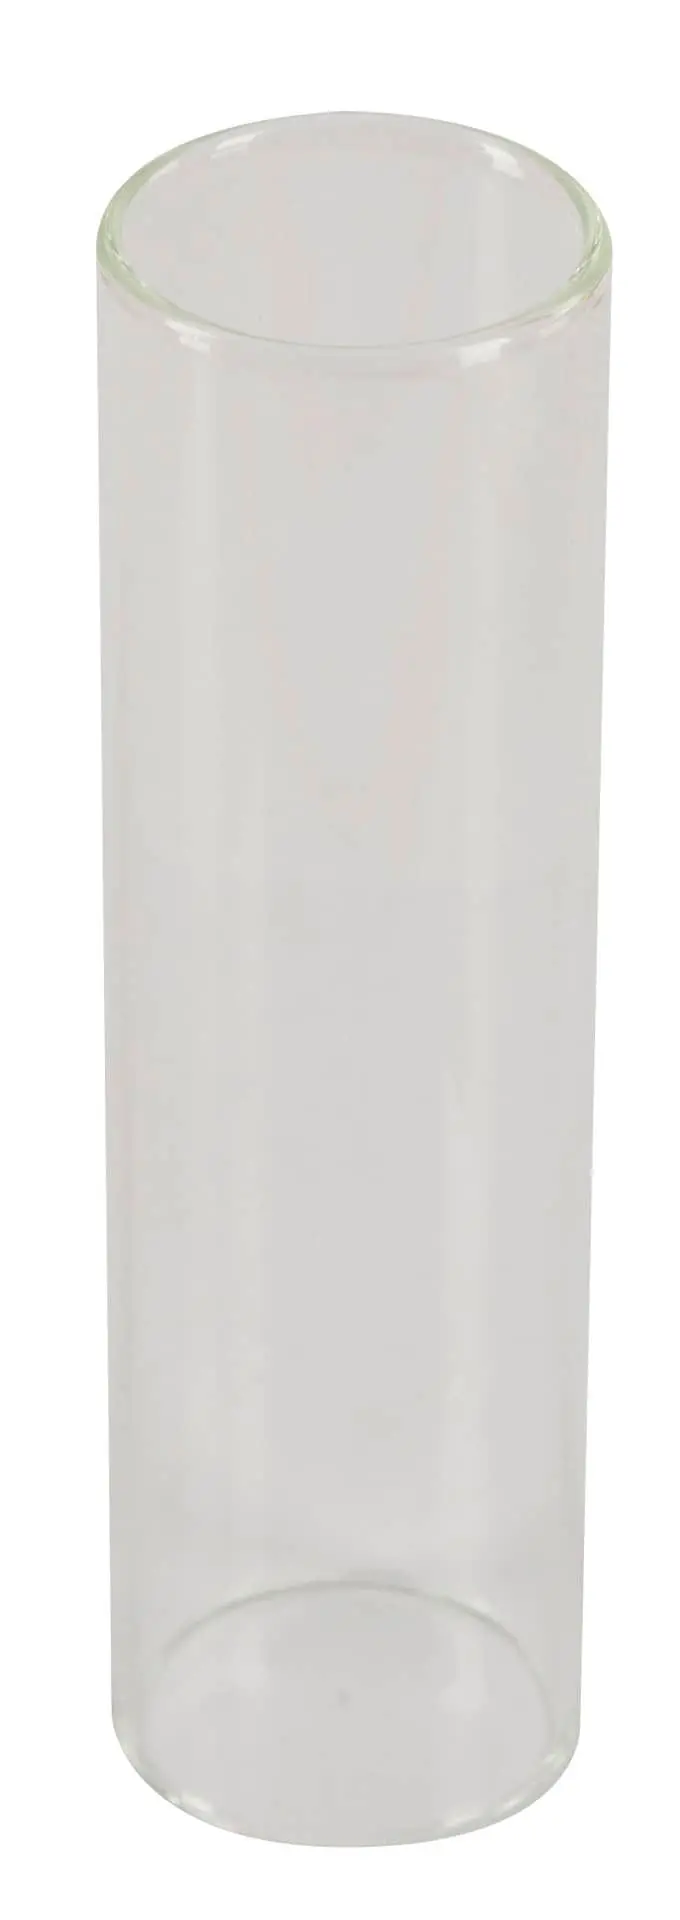 Glascylinder för Roux-spruta, ograderad